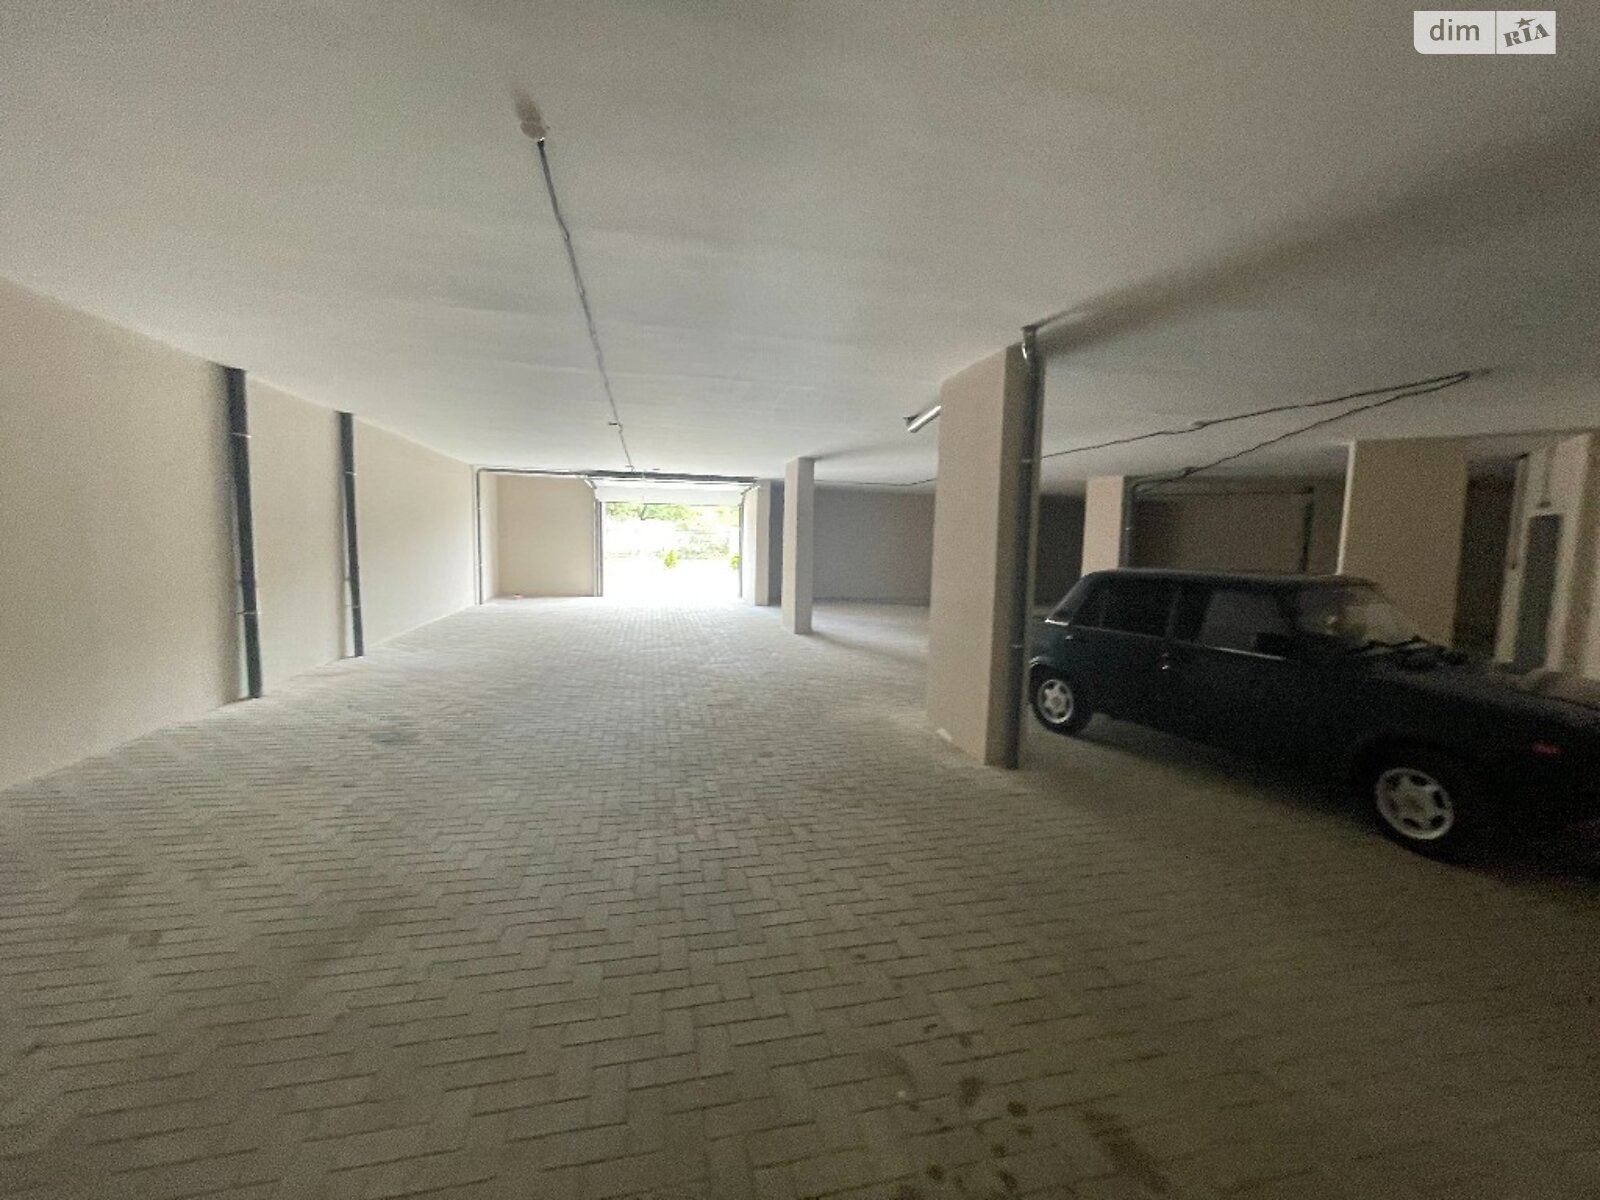 Место в подземном паркинге под легковое авто в Одессе, площадь 24.65 кв.м. фото 1